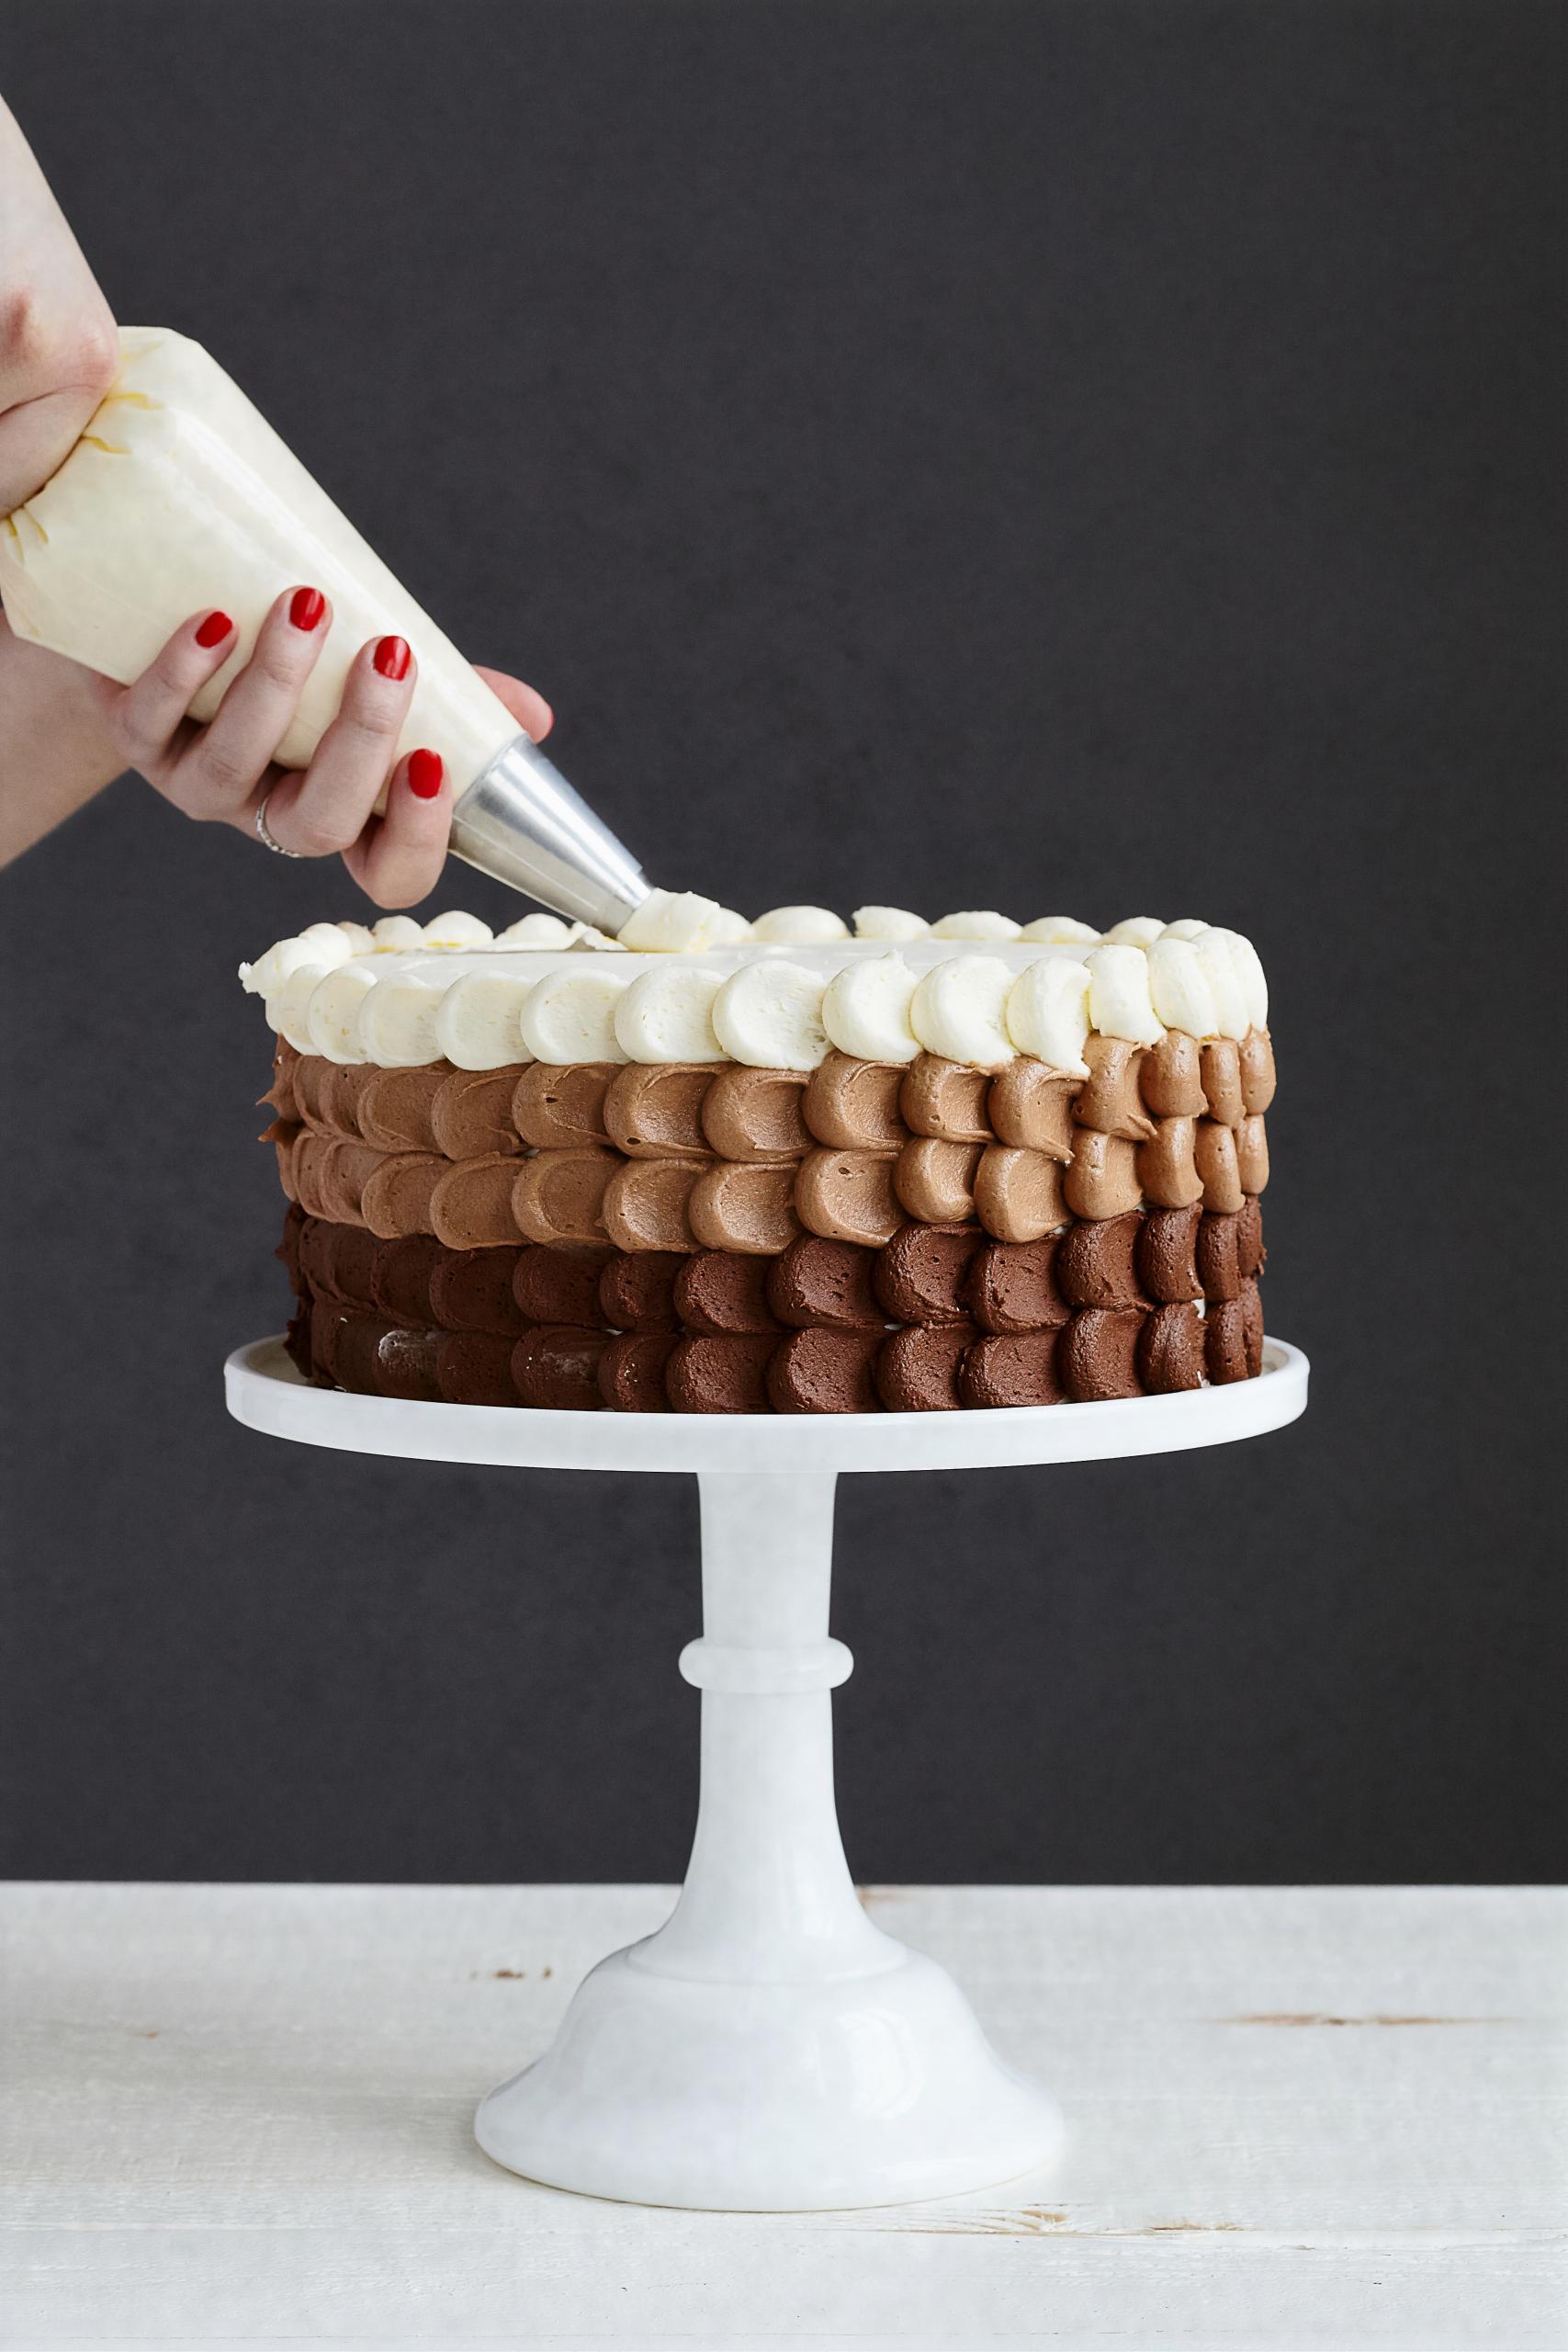 Zdobení dortů: bez jakých cukrářských potřeb se neobejdete? | Apetit Online